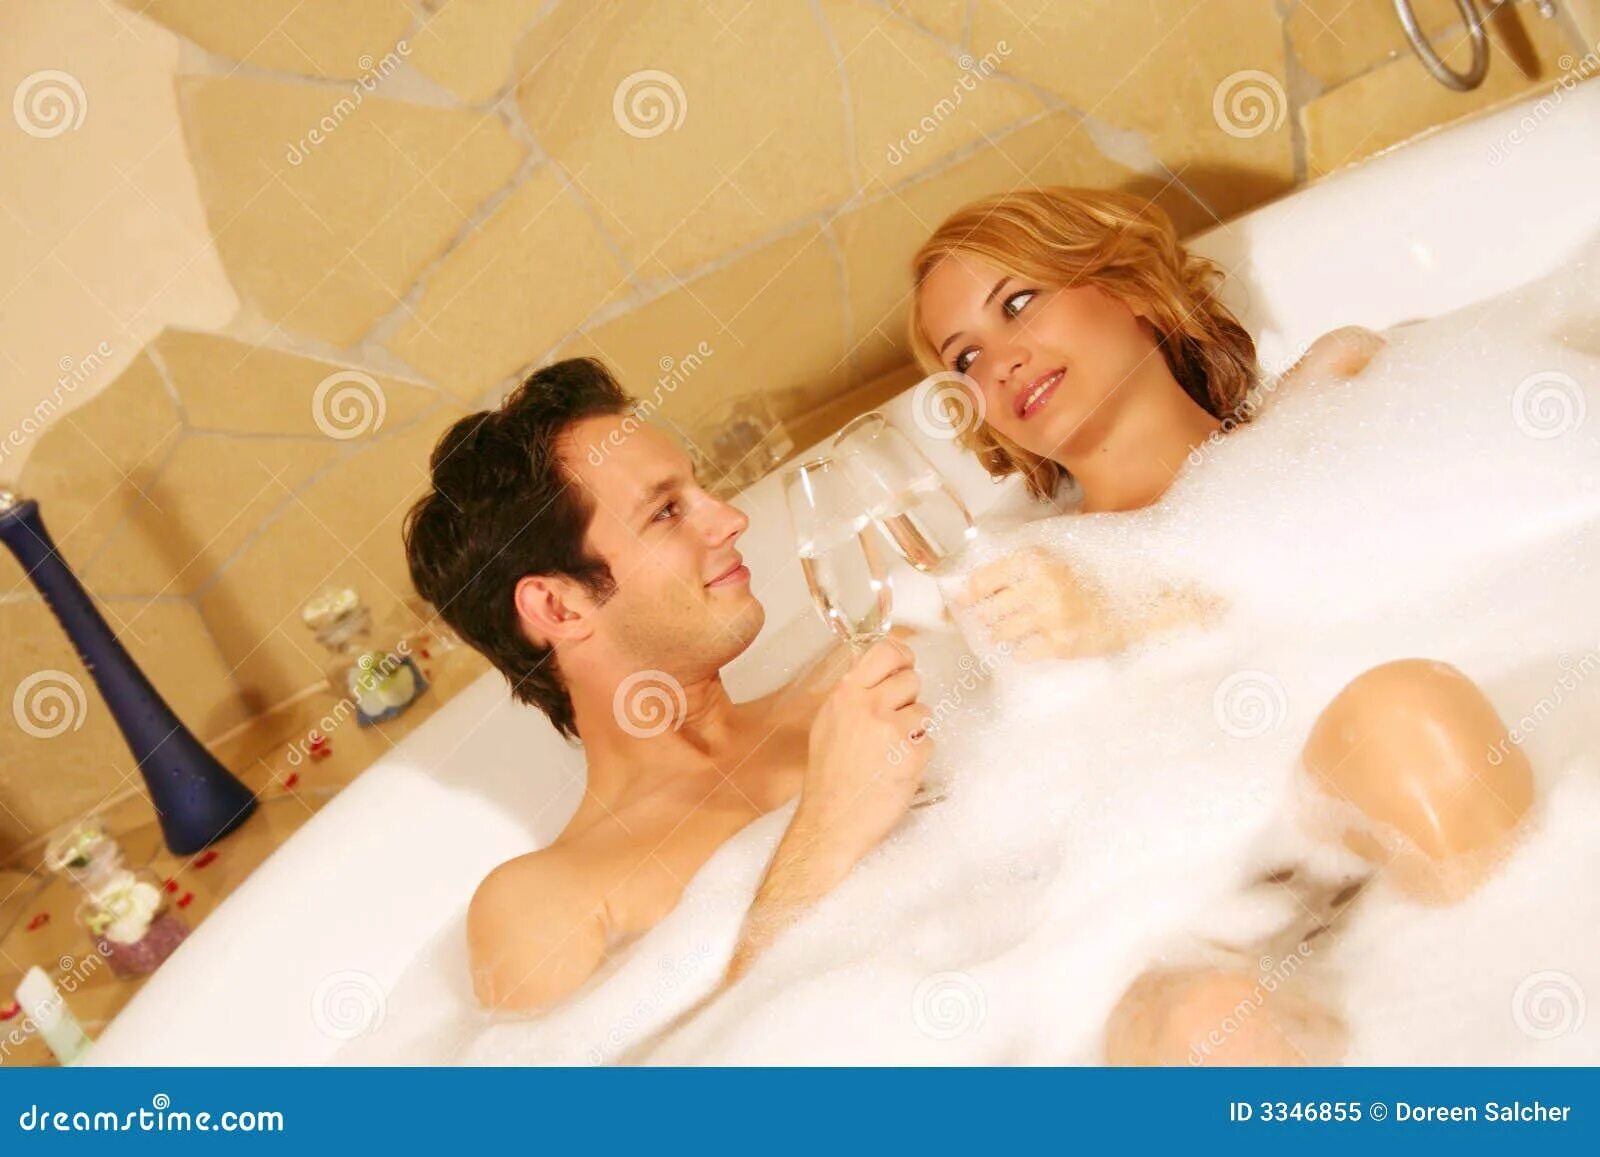 Семейные пары в ванной. Подростковая пара в ванной. Супружеская пара в ванной. Молодая парочка в ванной. С женой друга в ванне